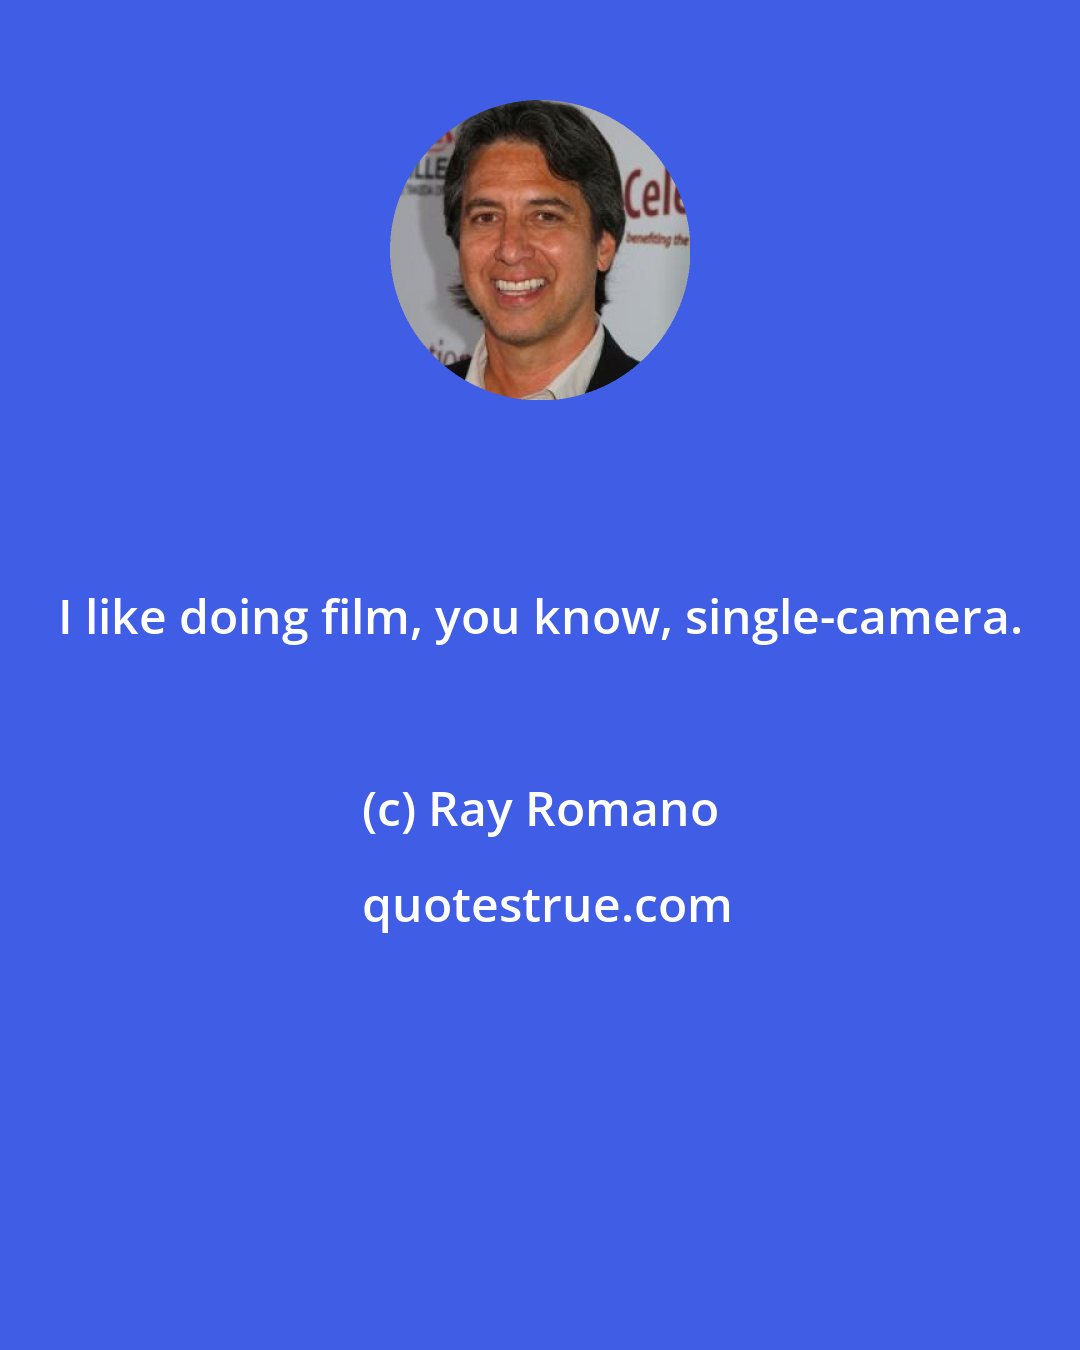 Ray Romano: I like doing film, you know, single-camera.